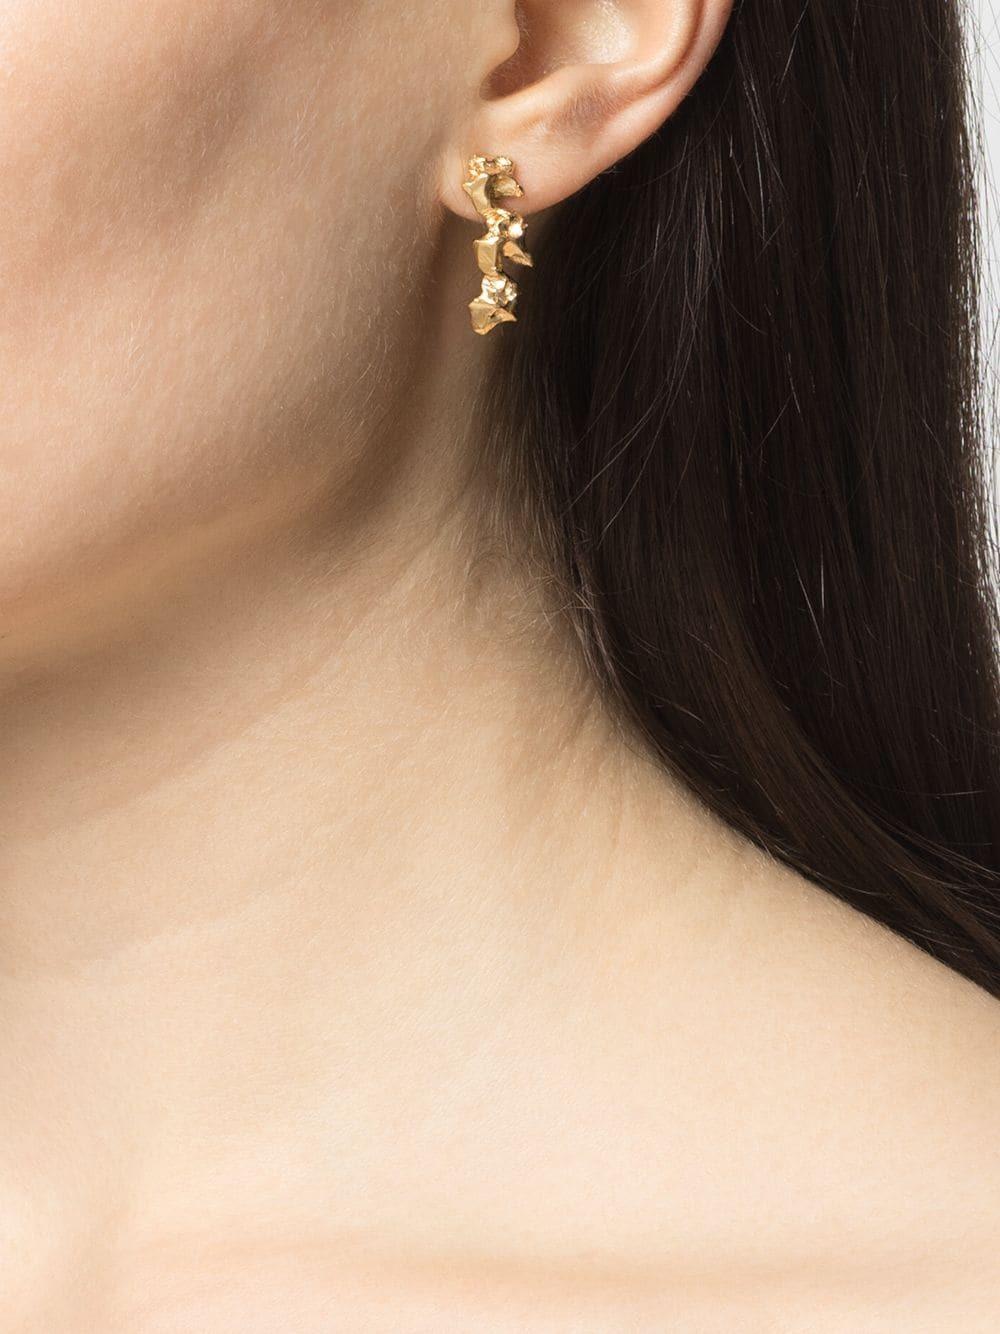 Fashion Irregular Metal Earrings Jewelry